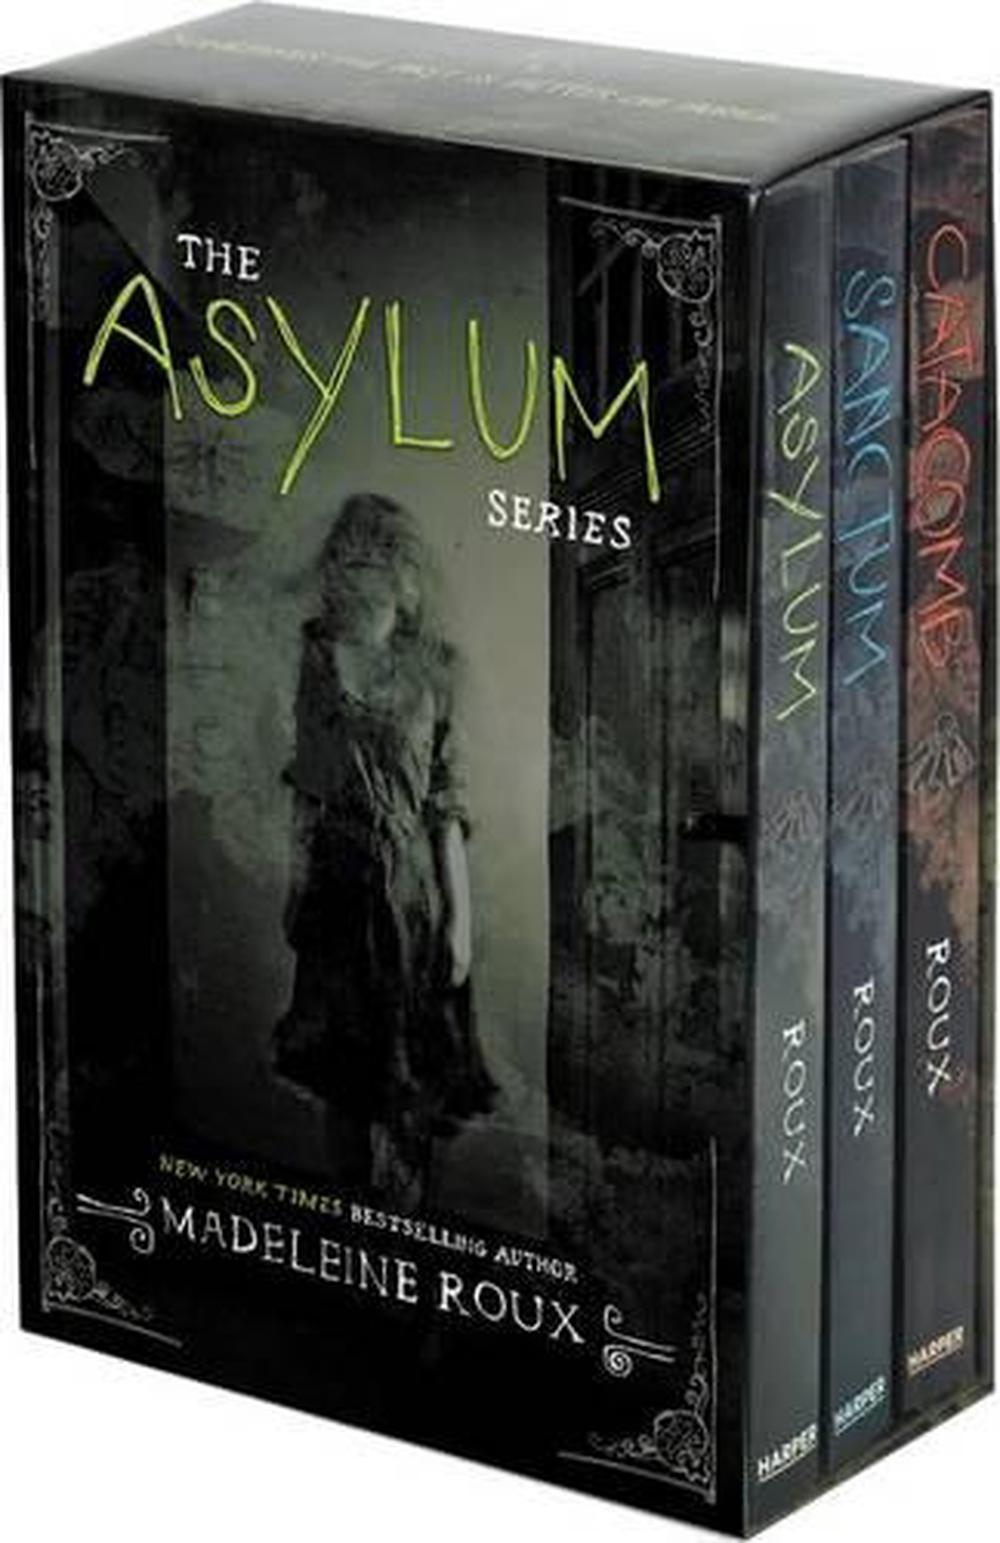 madeleine roux asylum series